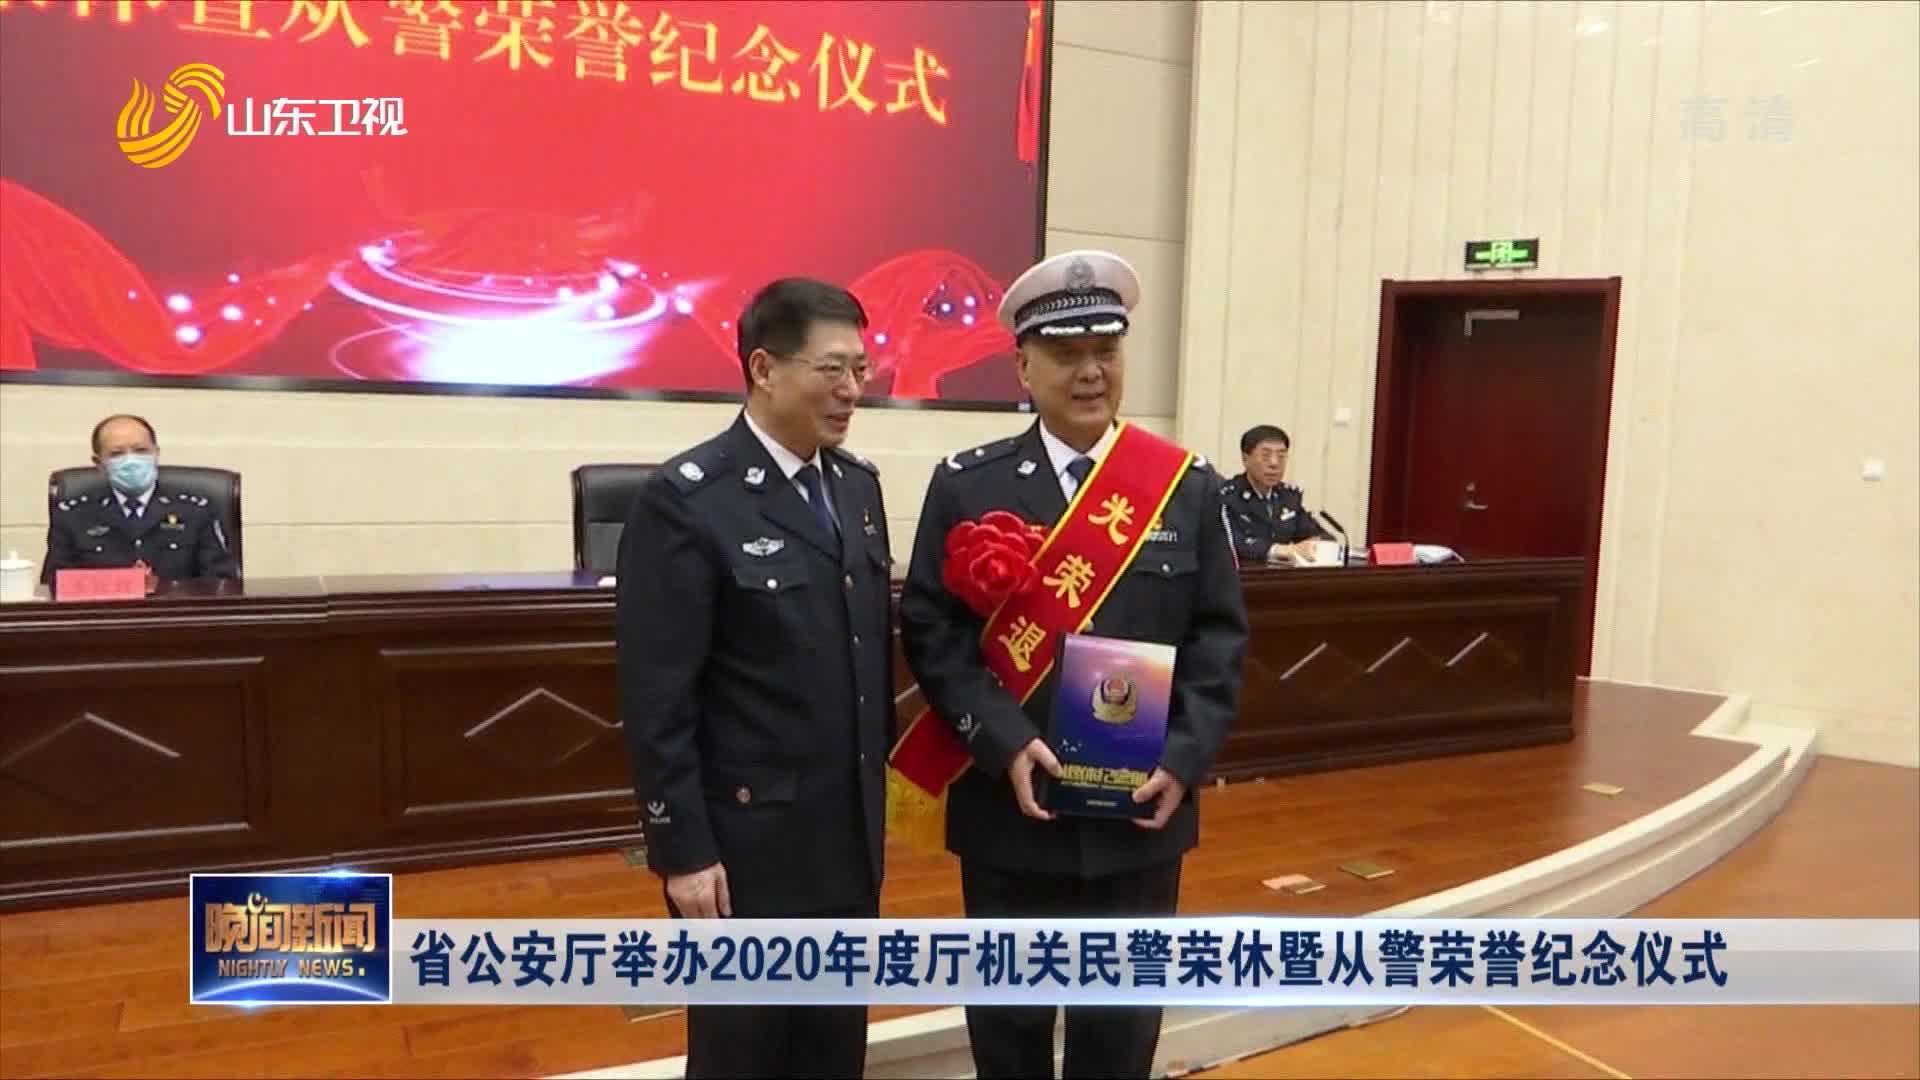 省公安厅举办2020年度厅机关民警荣休暨从警荣誉纪念仪式